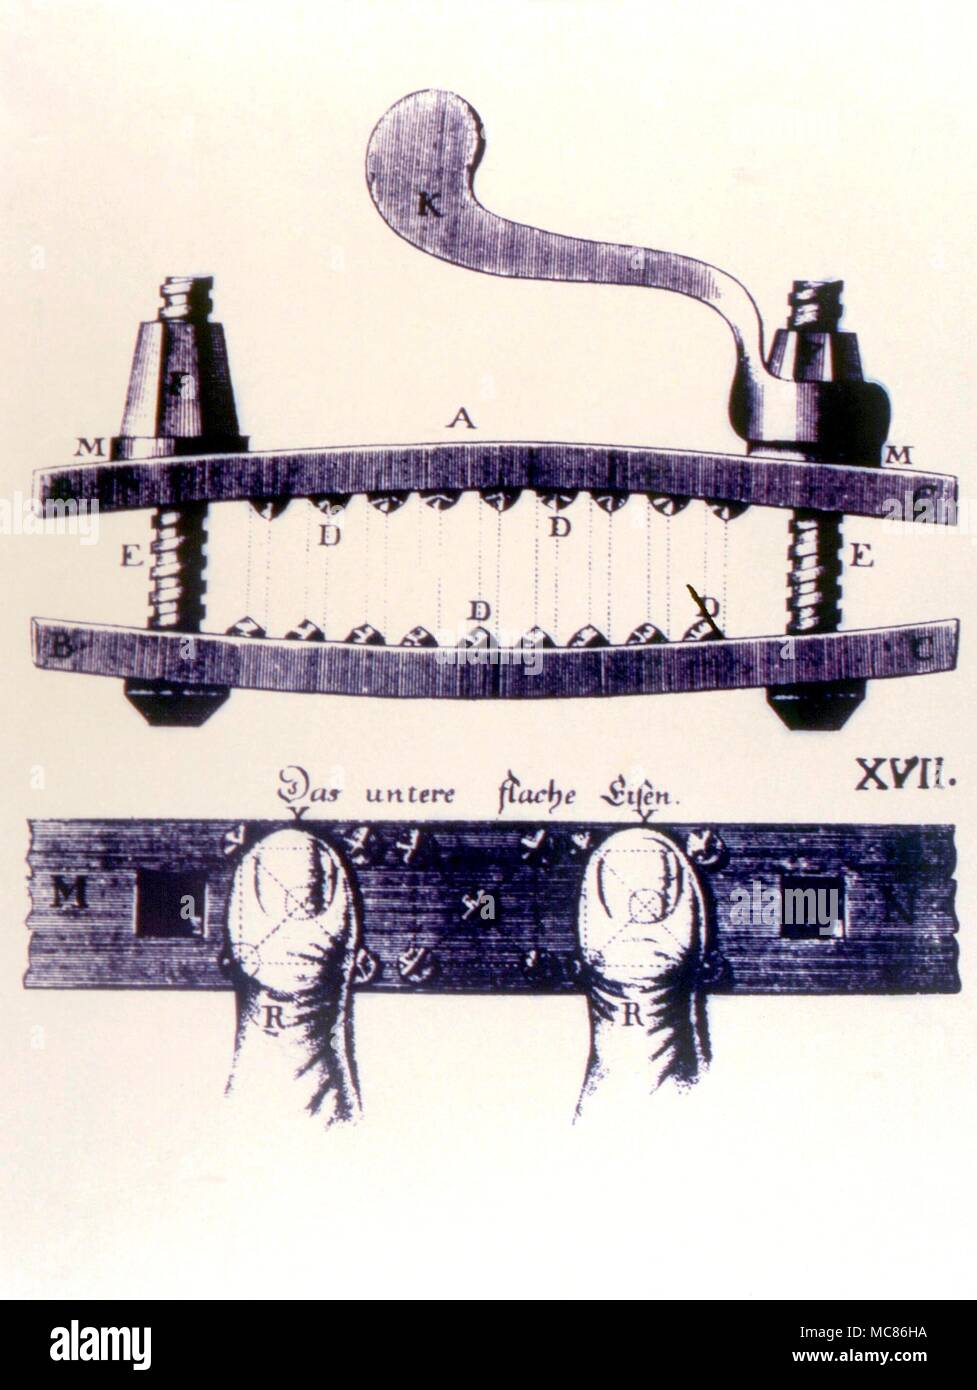 Folter - Rändelschraube Wissenschaftlich entworfen Rändelschraube, die gemäß den Angaben in der "Constitutio Criminalis Theresiana', Wien, 1769 gelegt Stockfoto